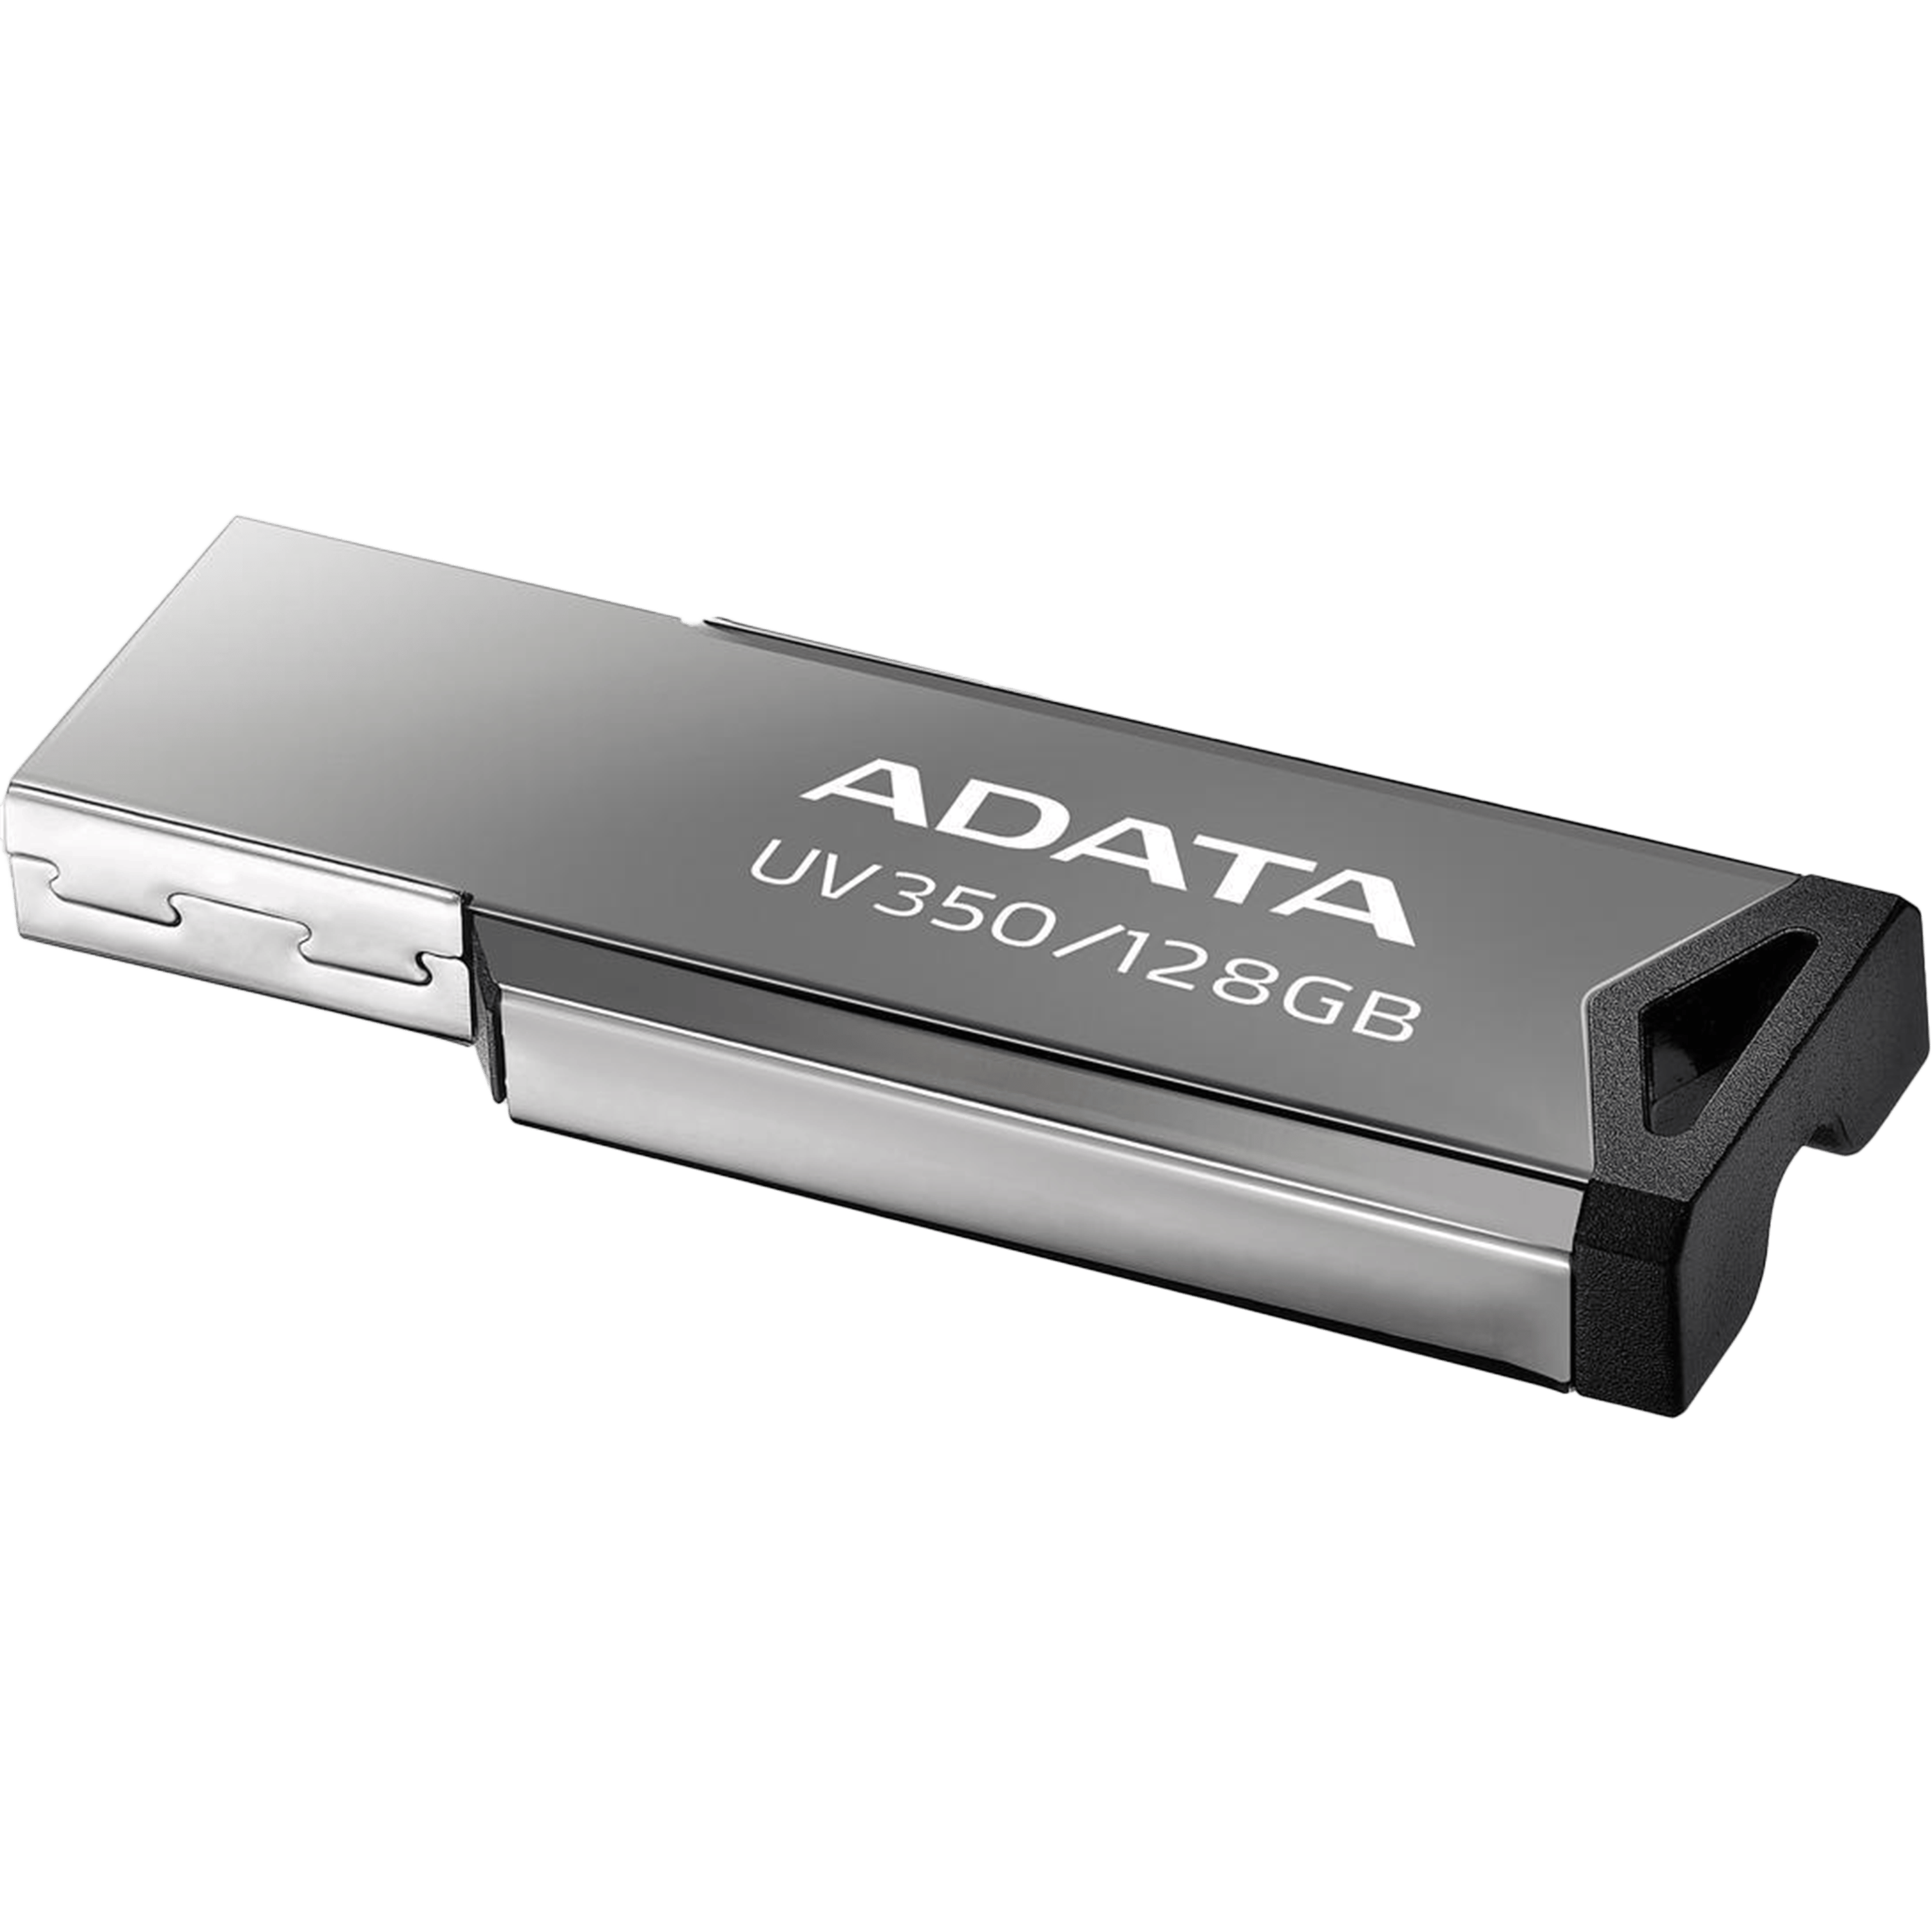 דיסק און קי ADATA USB 3.2 Flash Drive UV350 128GB - צבע כסף חמש שנות אחריות ע